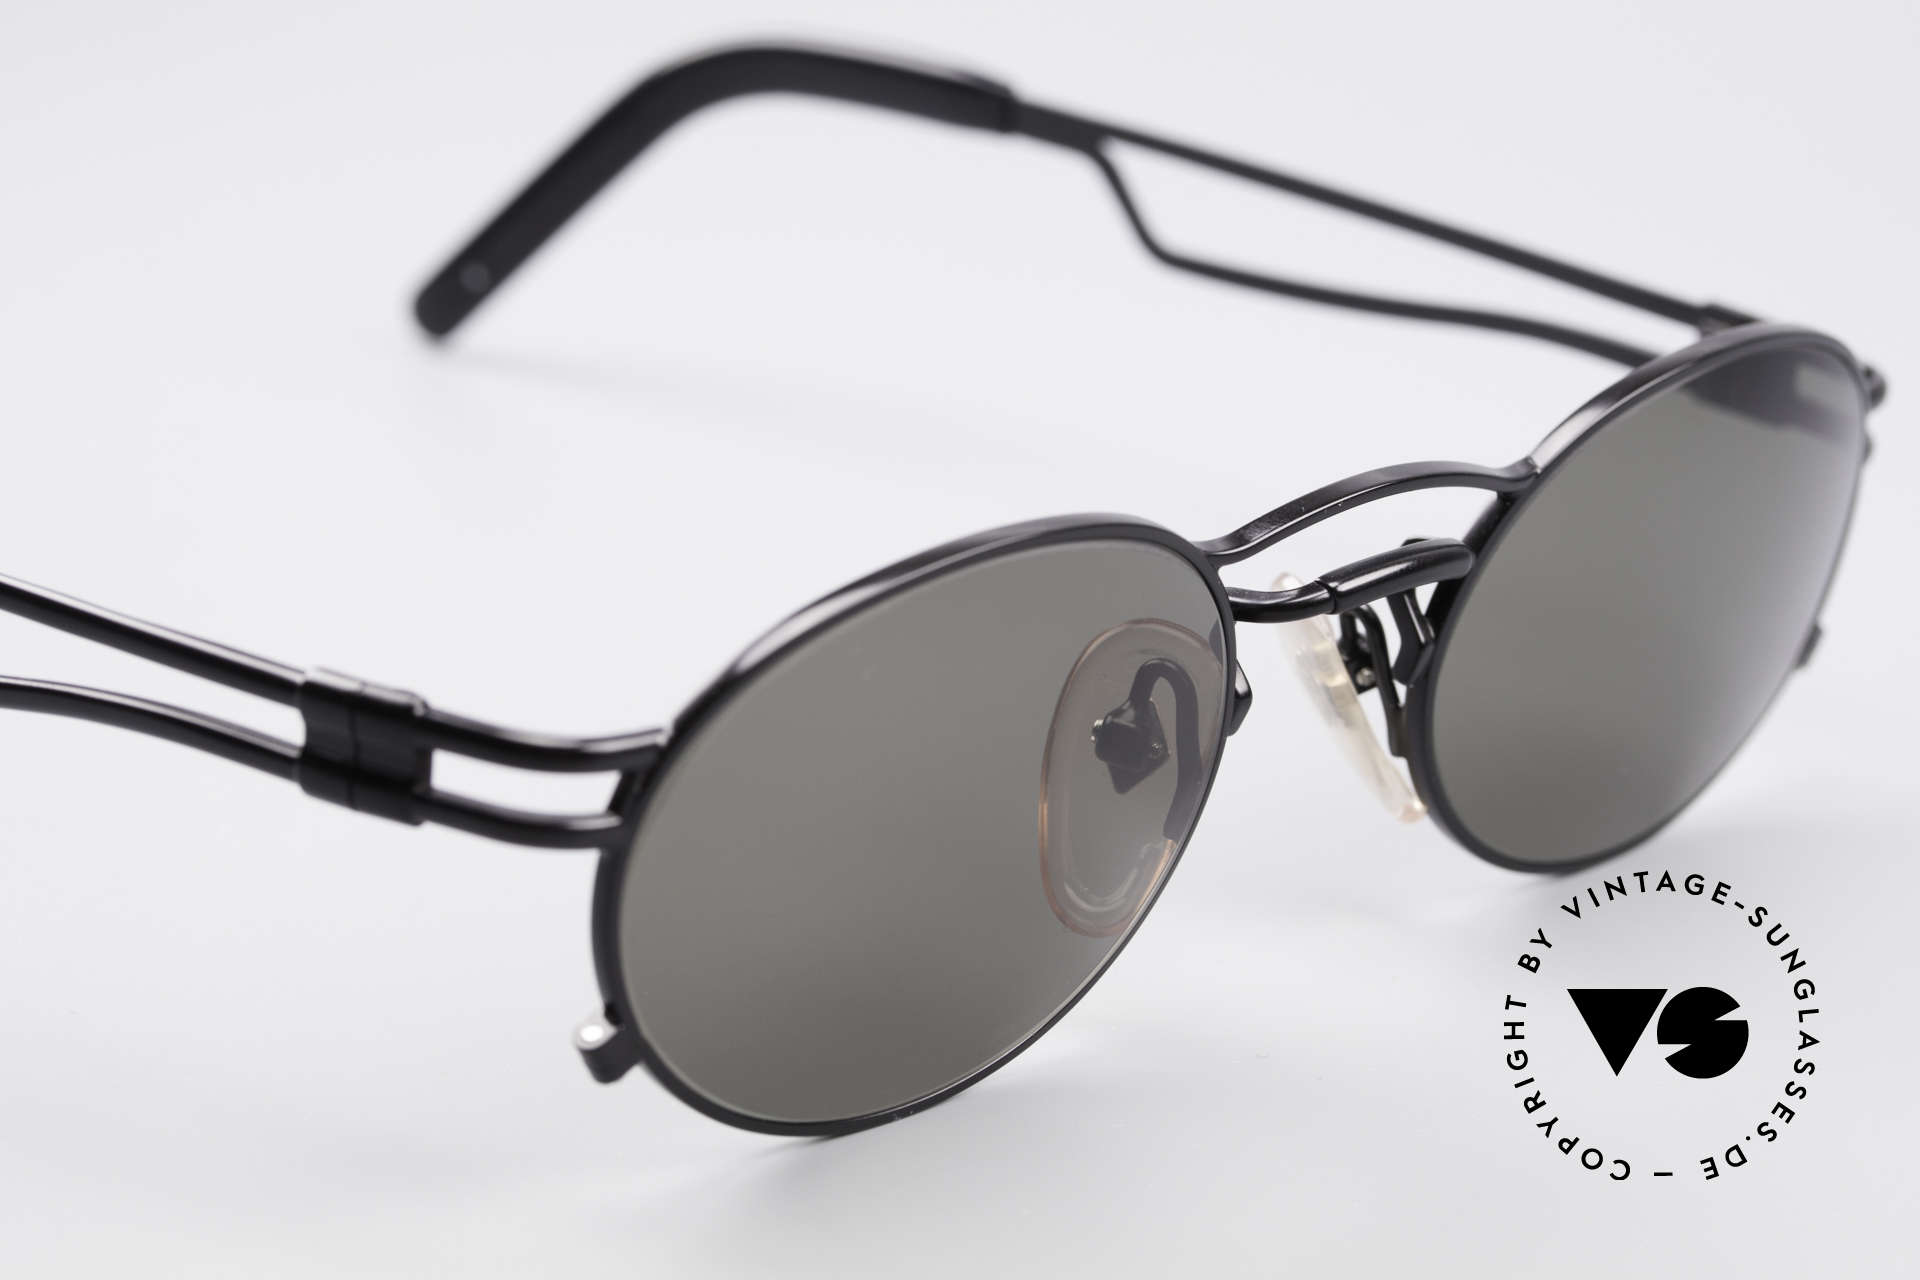 Sunglasses Jean Paul Gaultier 56-3173 Oval Vintage Sunglasses